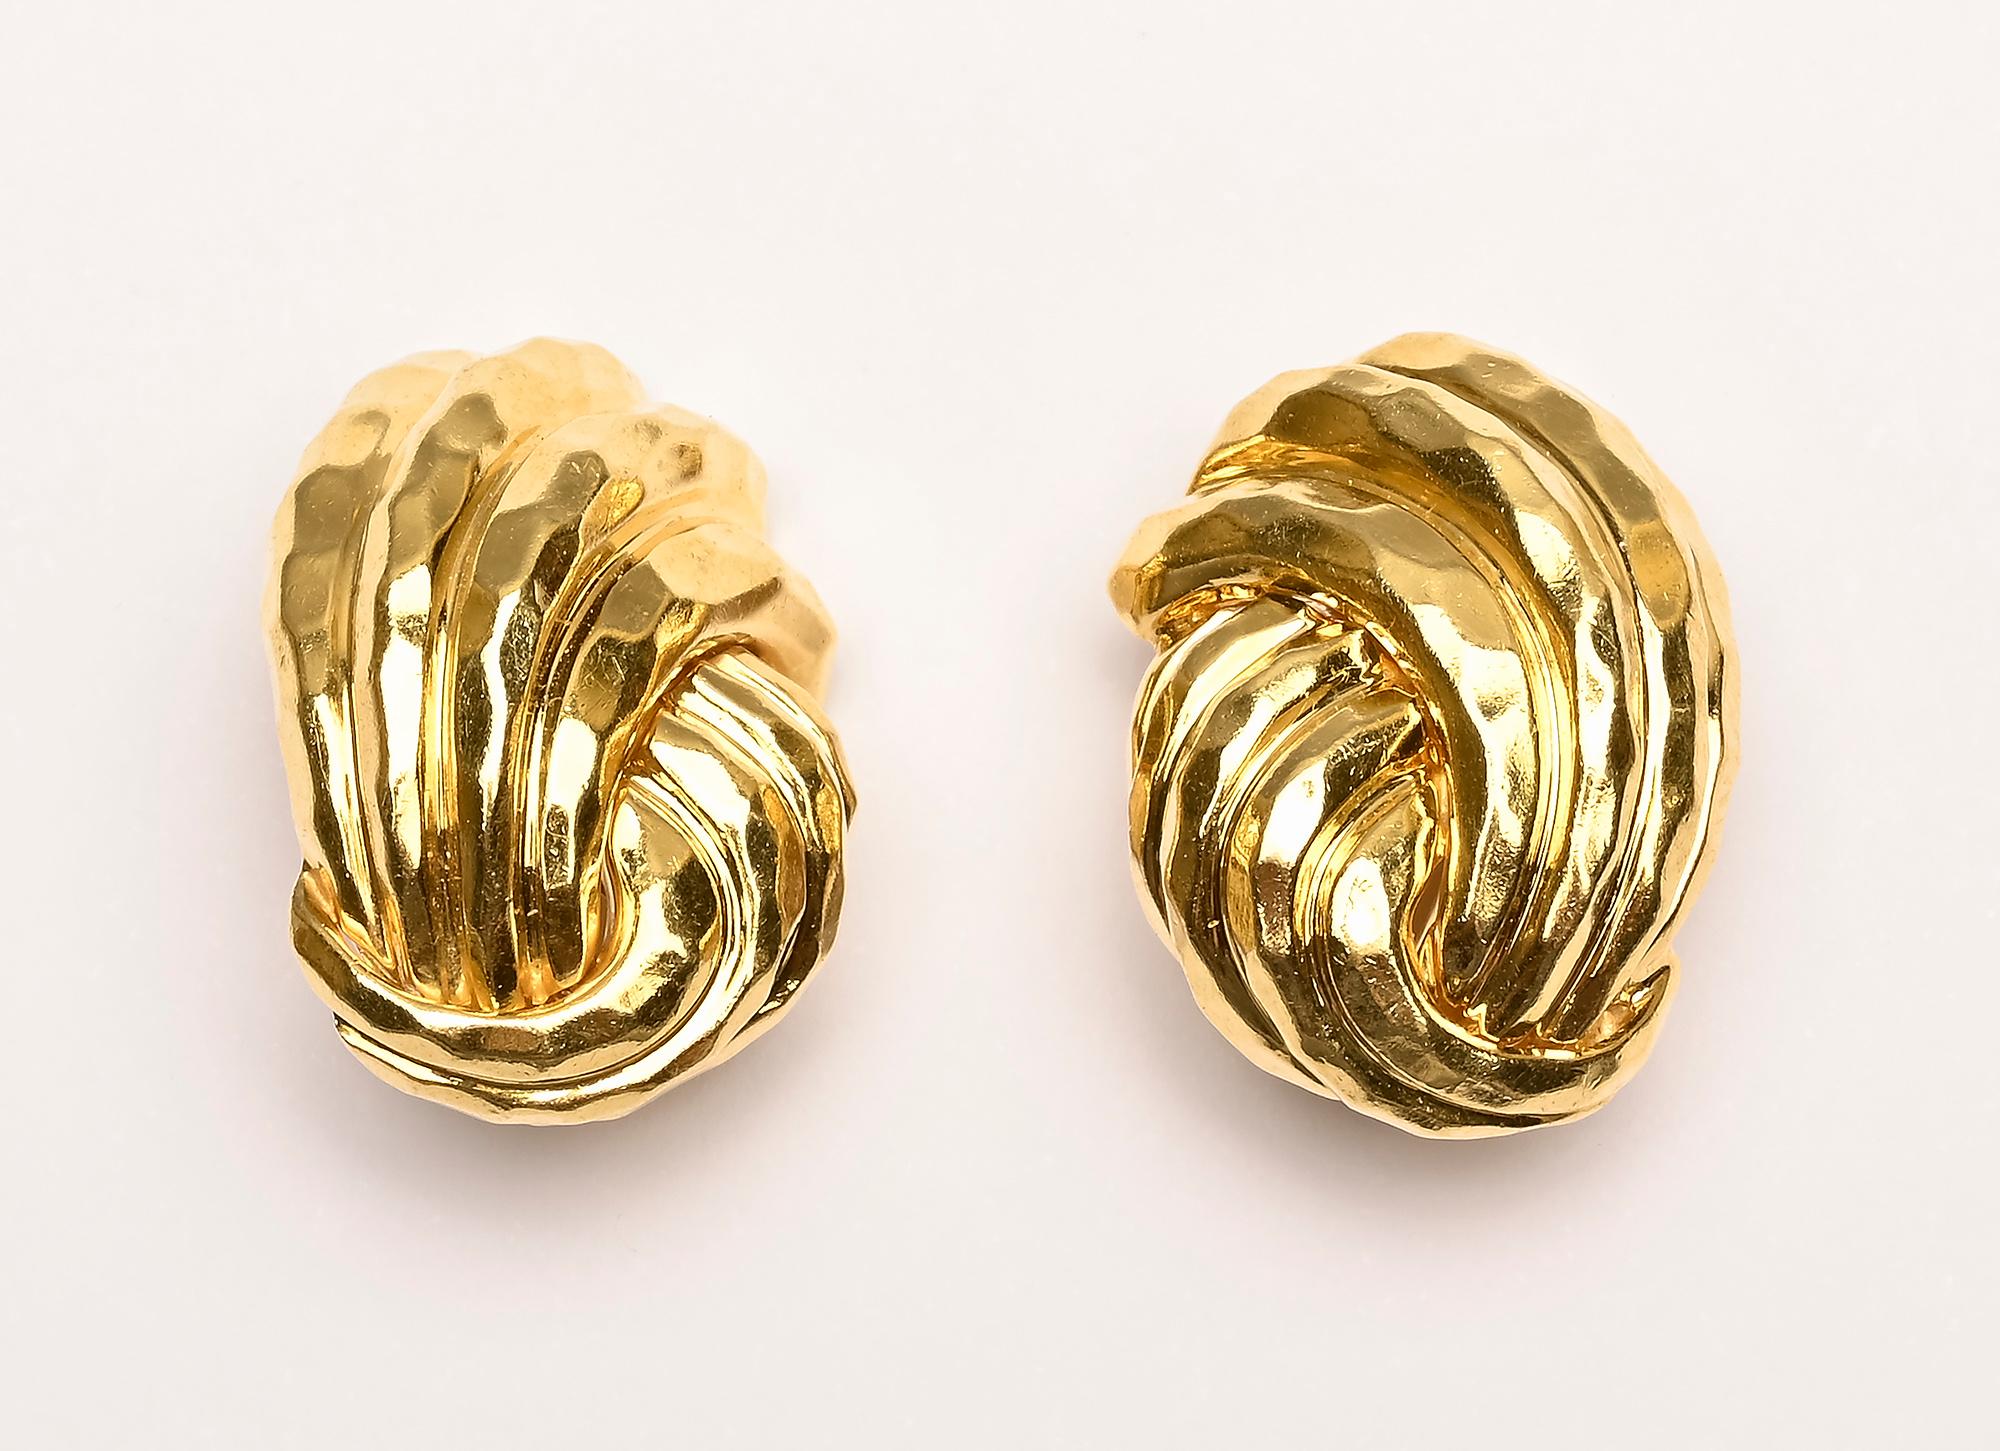 Ovale, gewirbelte Ohrringe von Henry Dunay in einer seiner bevorzugten gehämmerten Goldoberflächen. Die Ohrringe sind 3/4